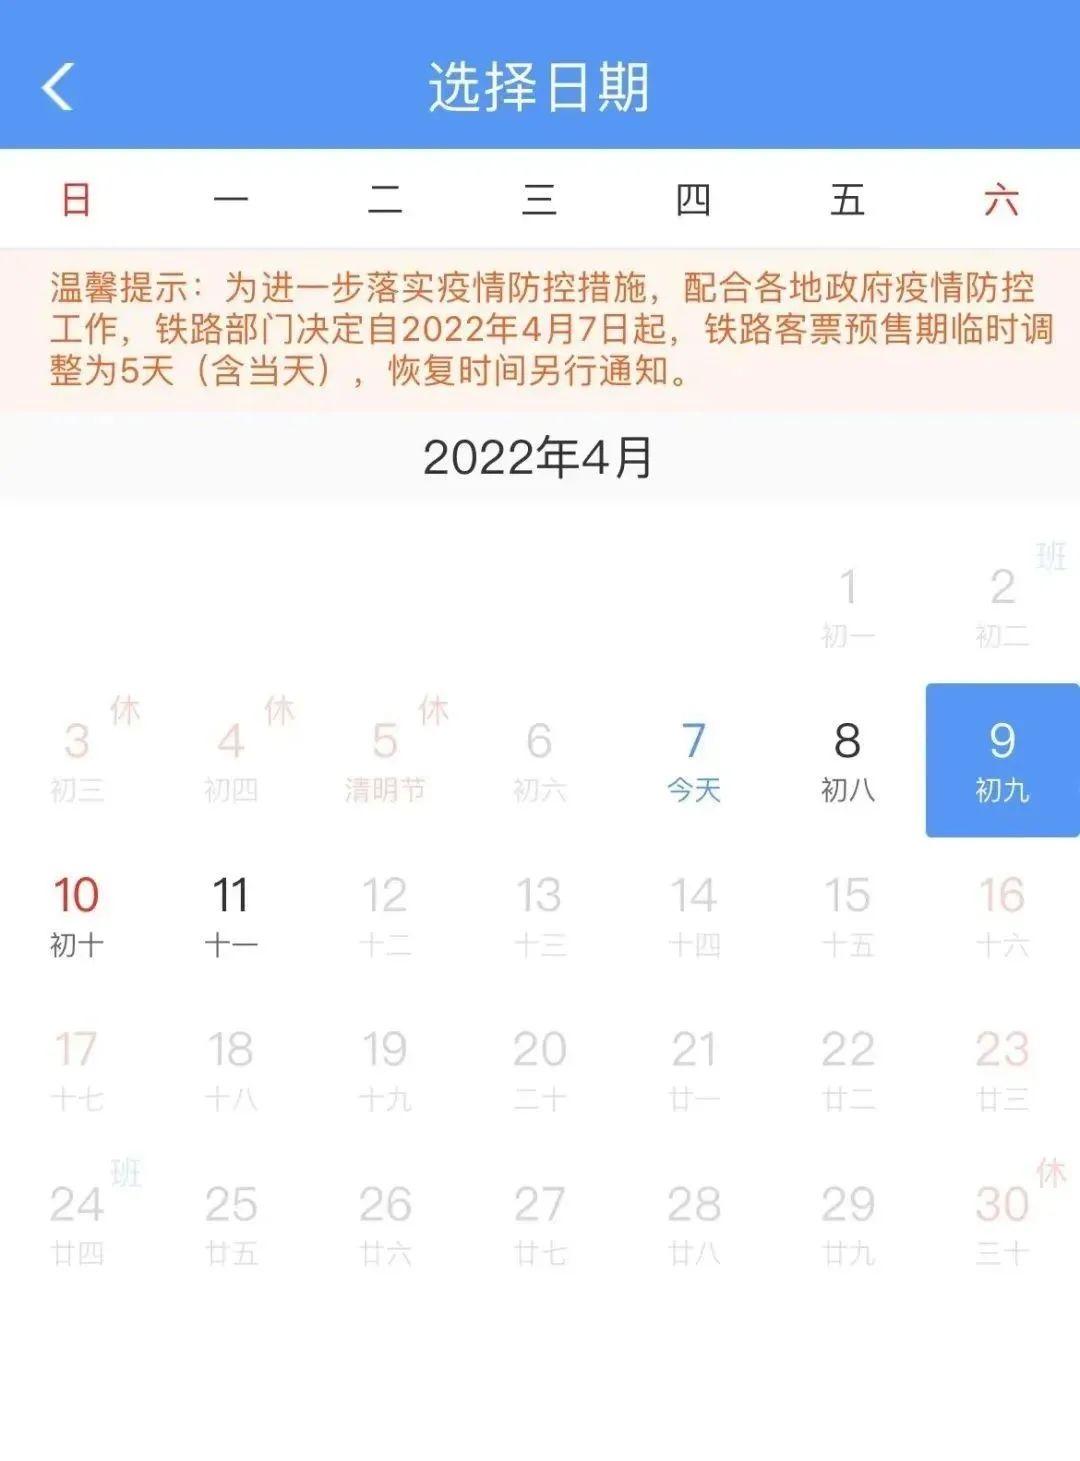 深圳高铁火车票预售期临时调整为5天